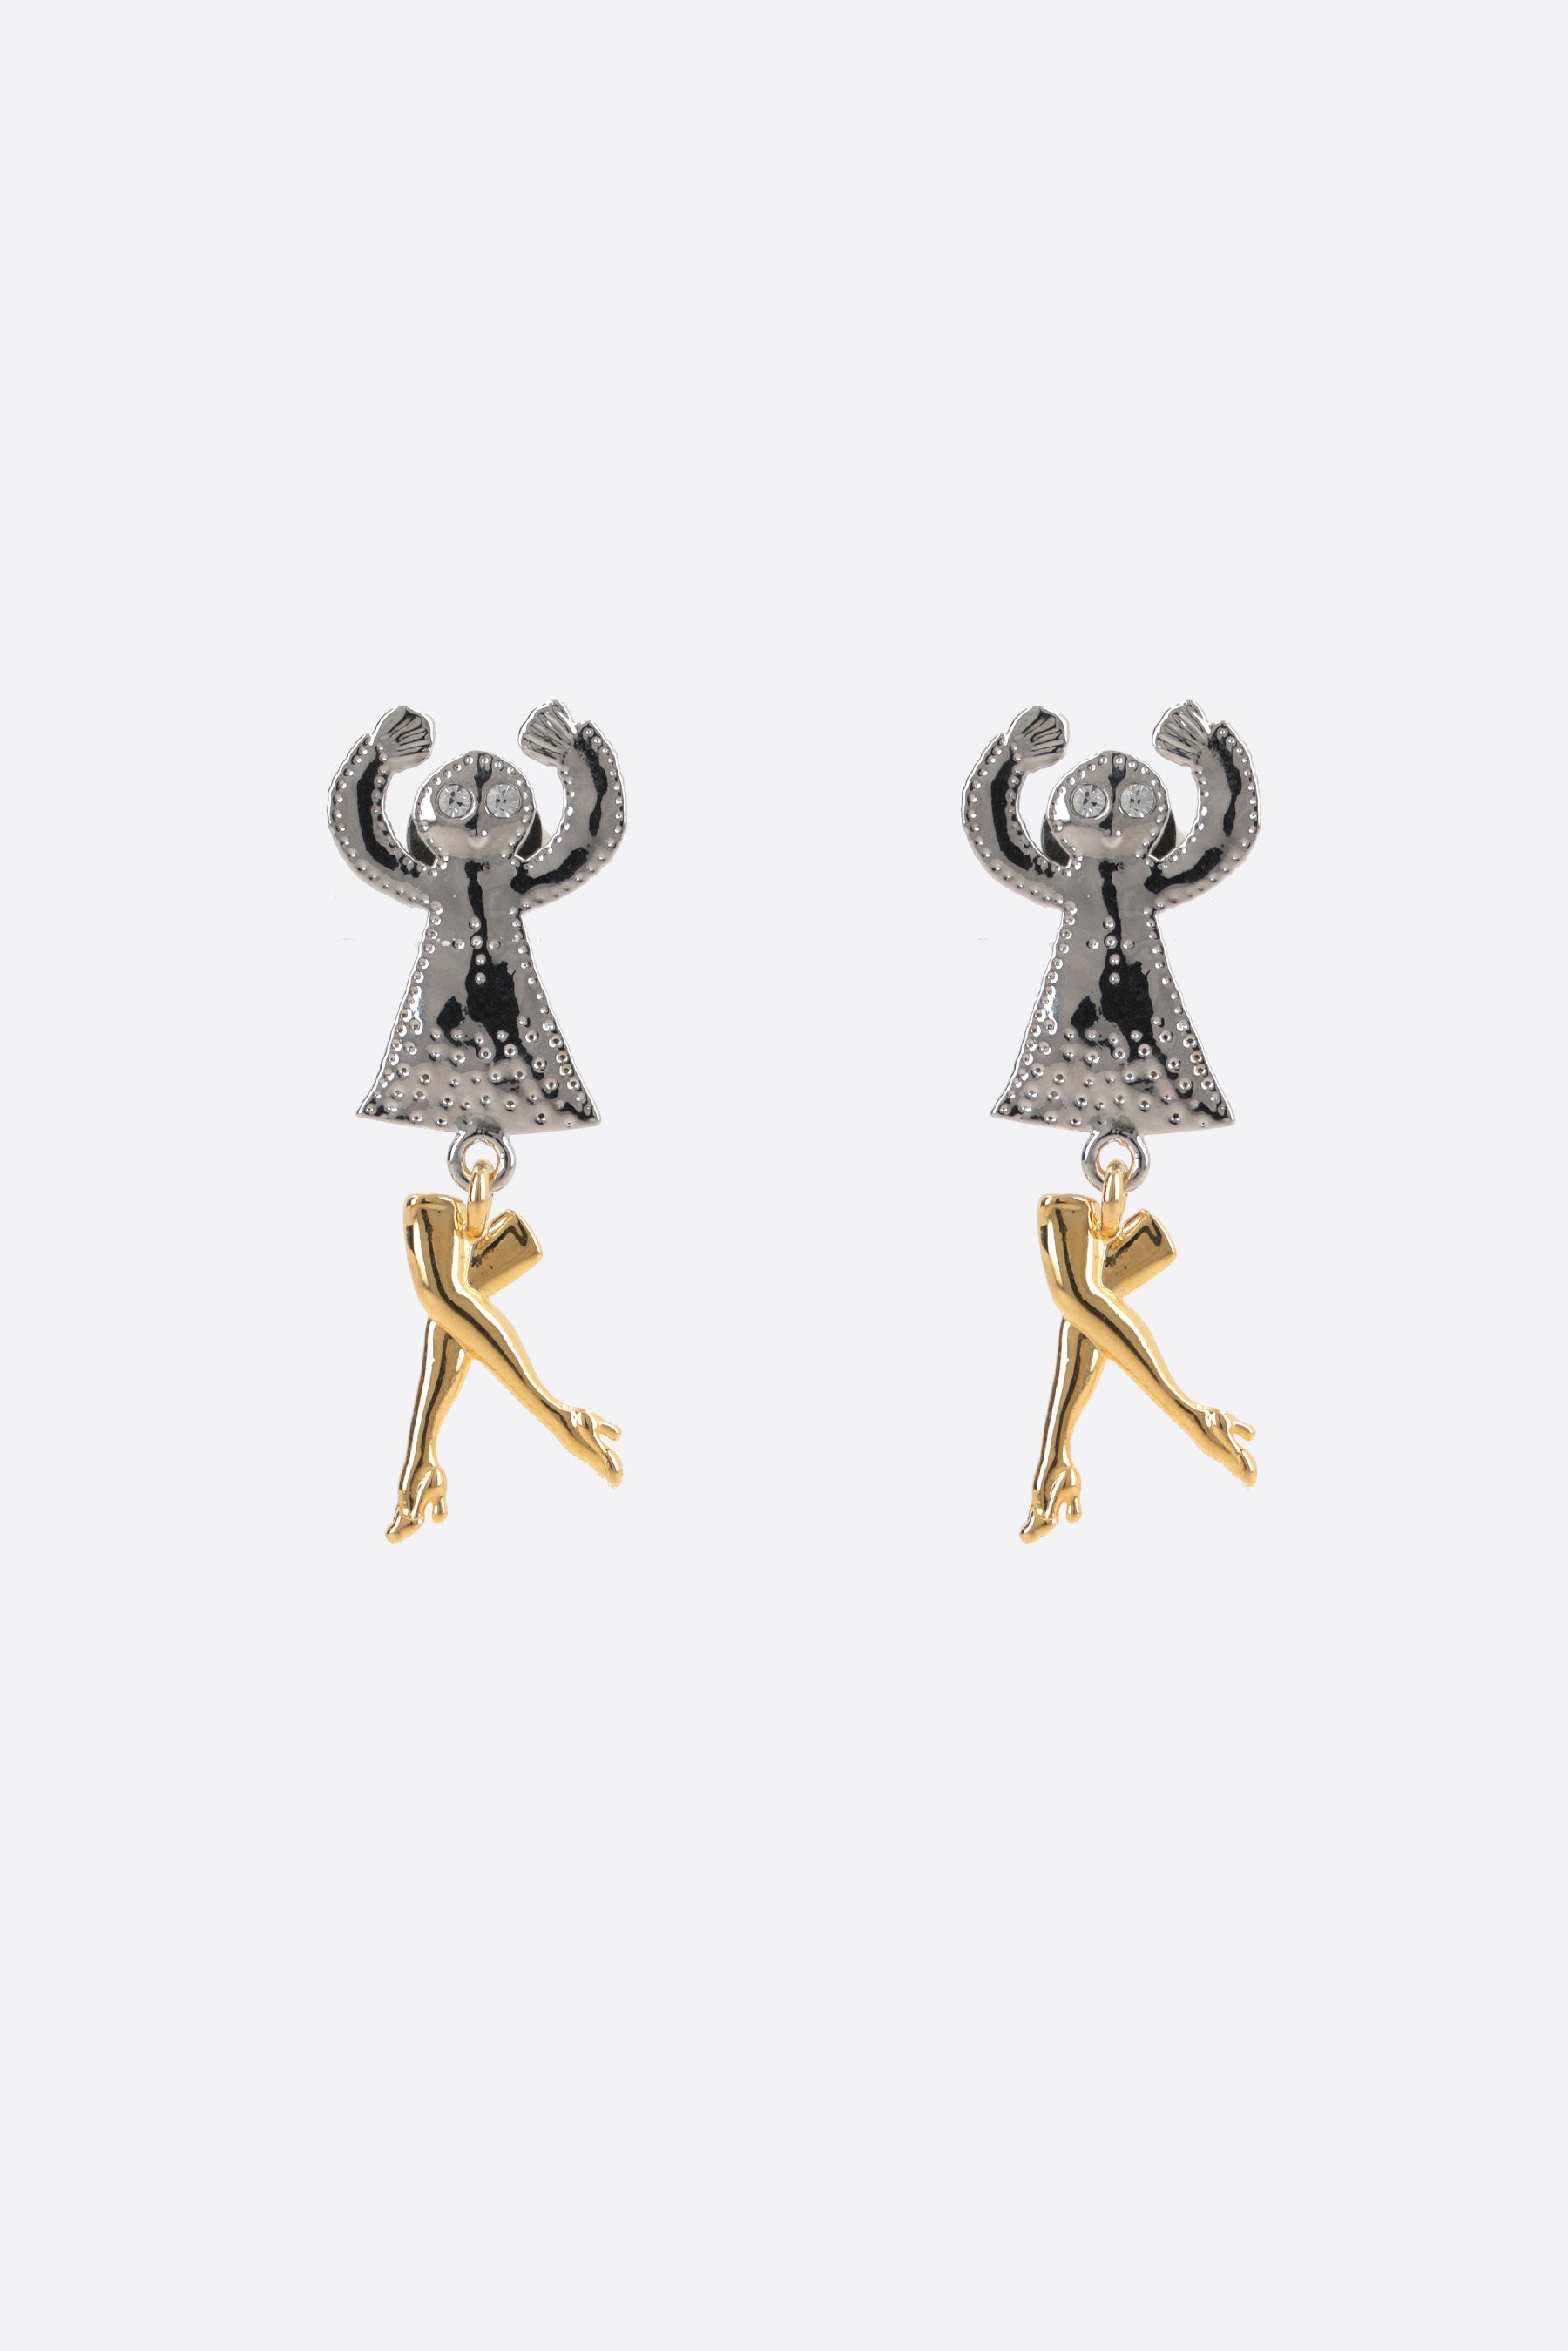 Dancing Legs brass earrings